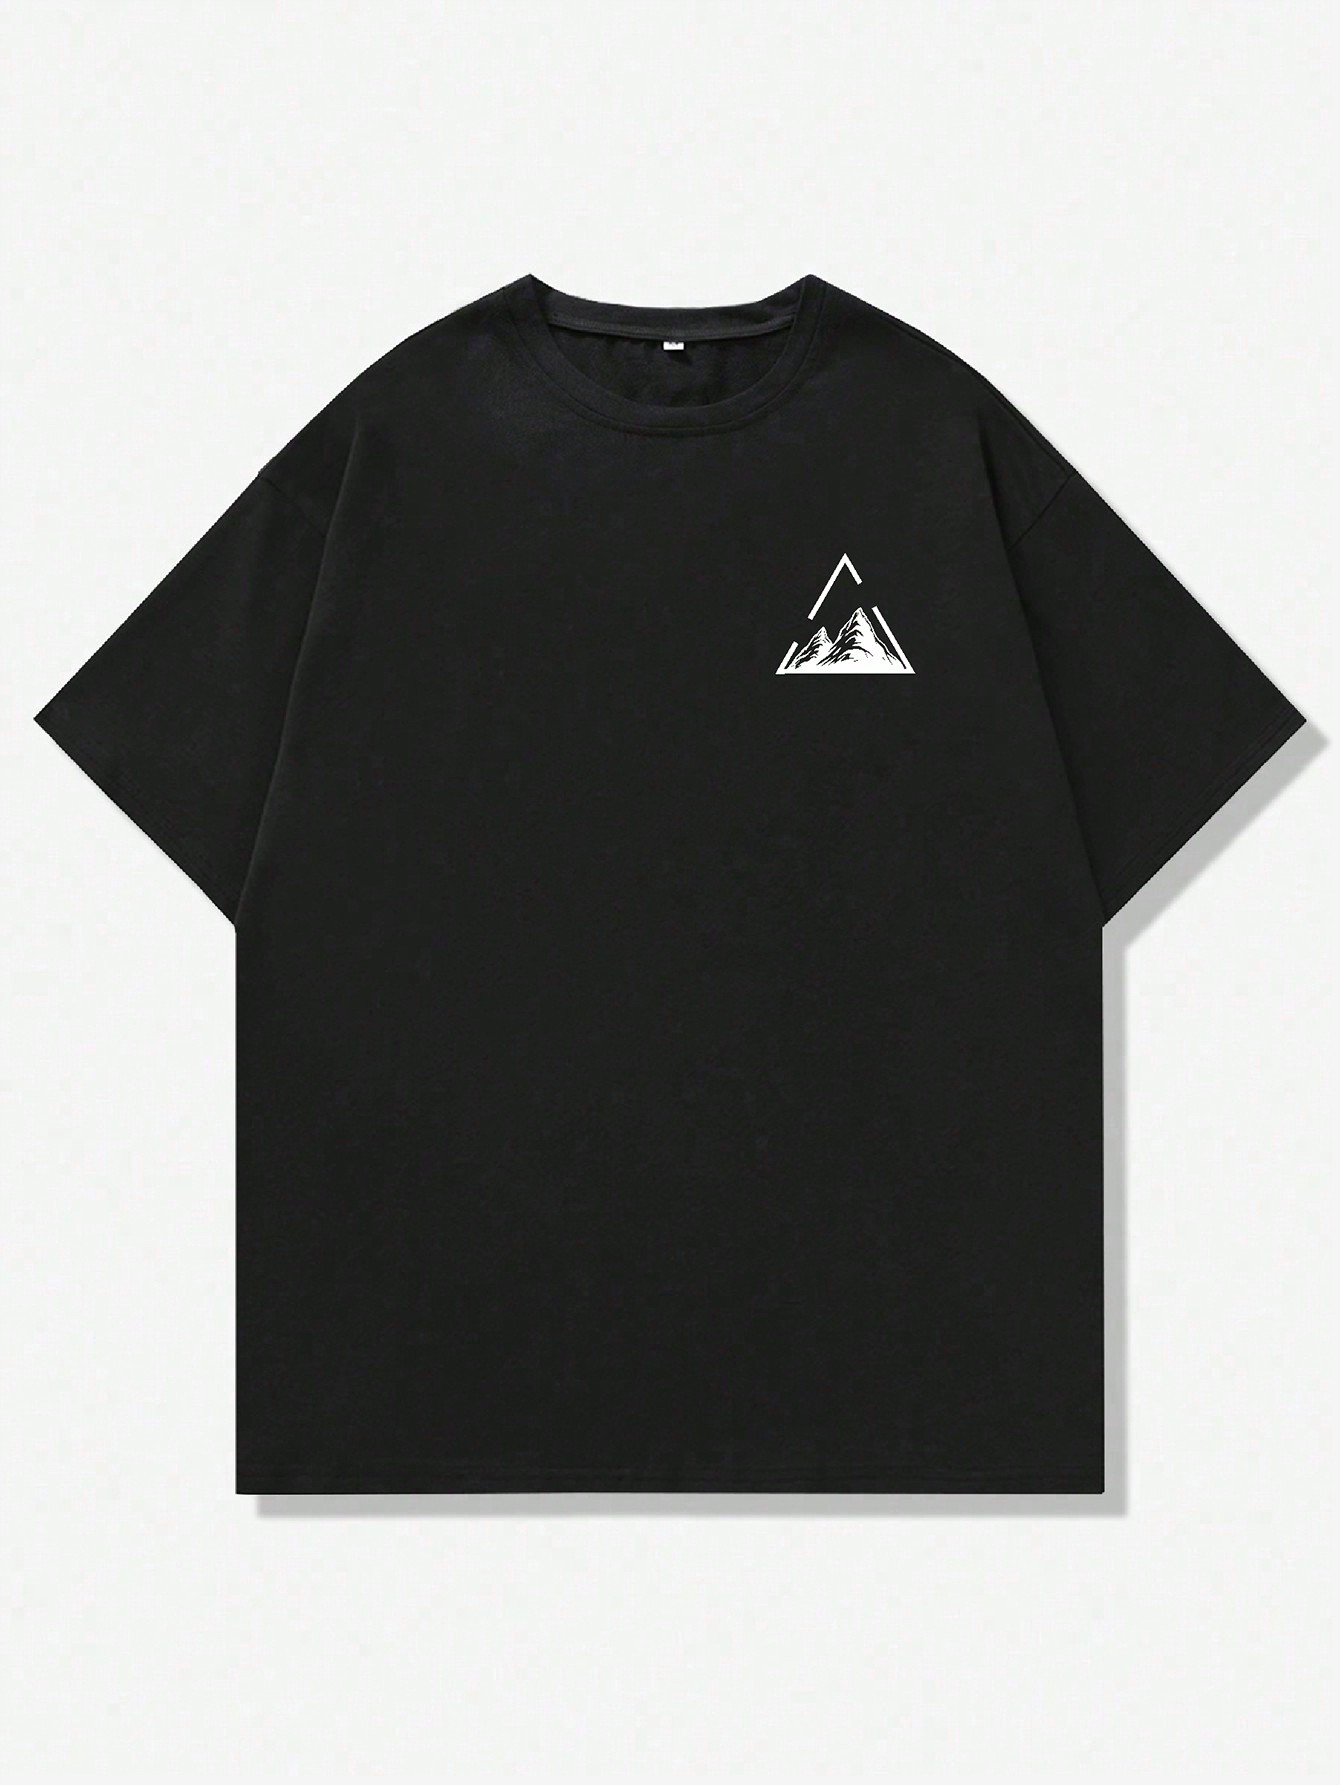 Мужская футболка Manfinity LEGND с короткими рукавами и принтом гор, черный